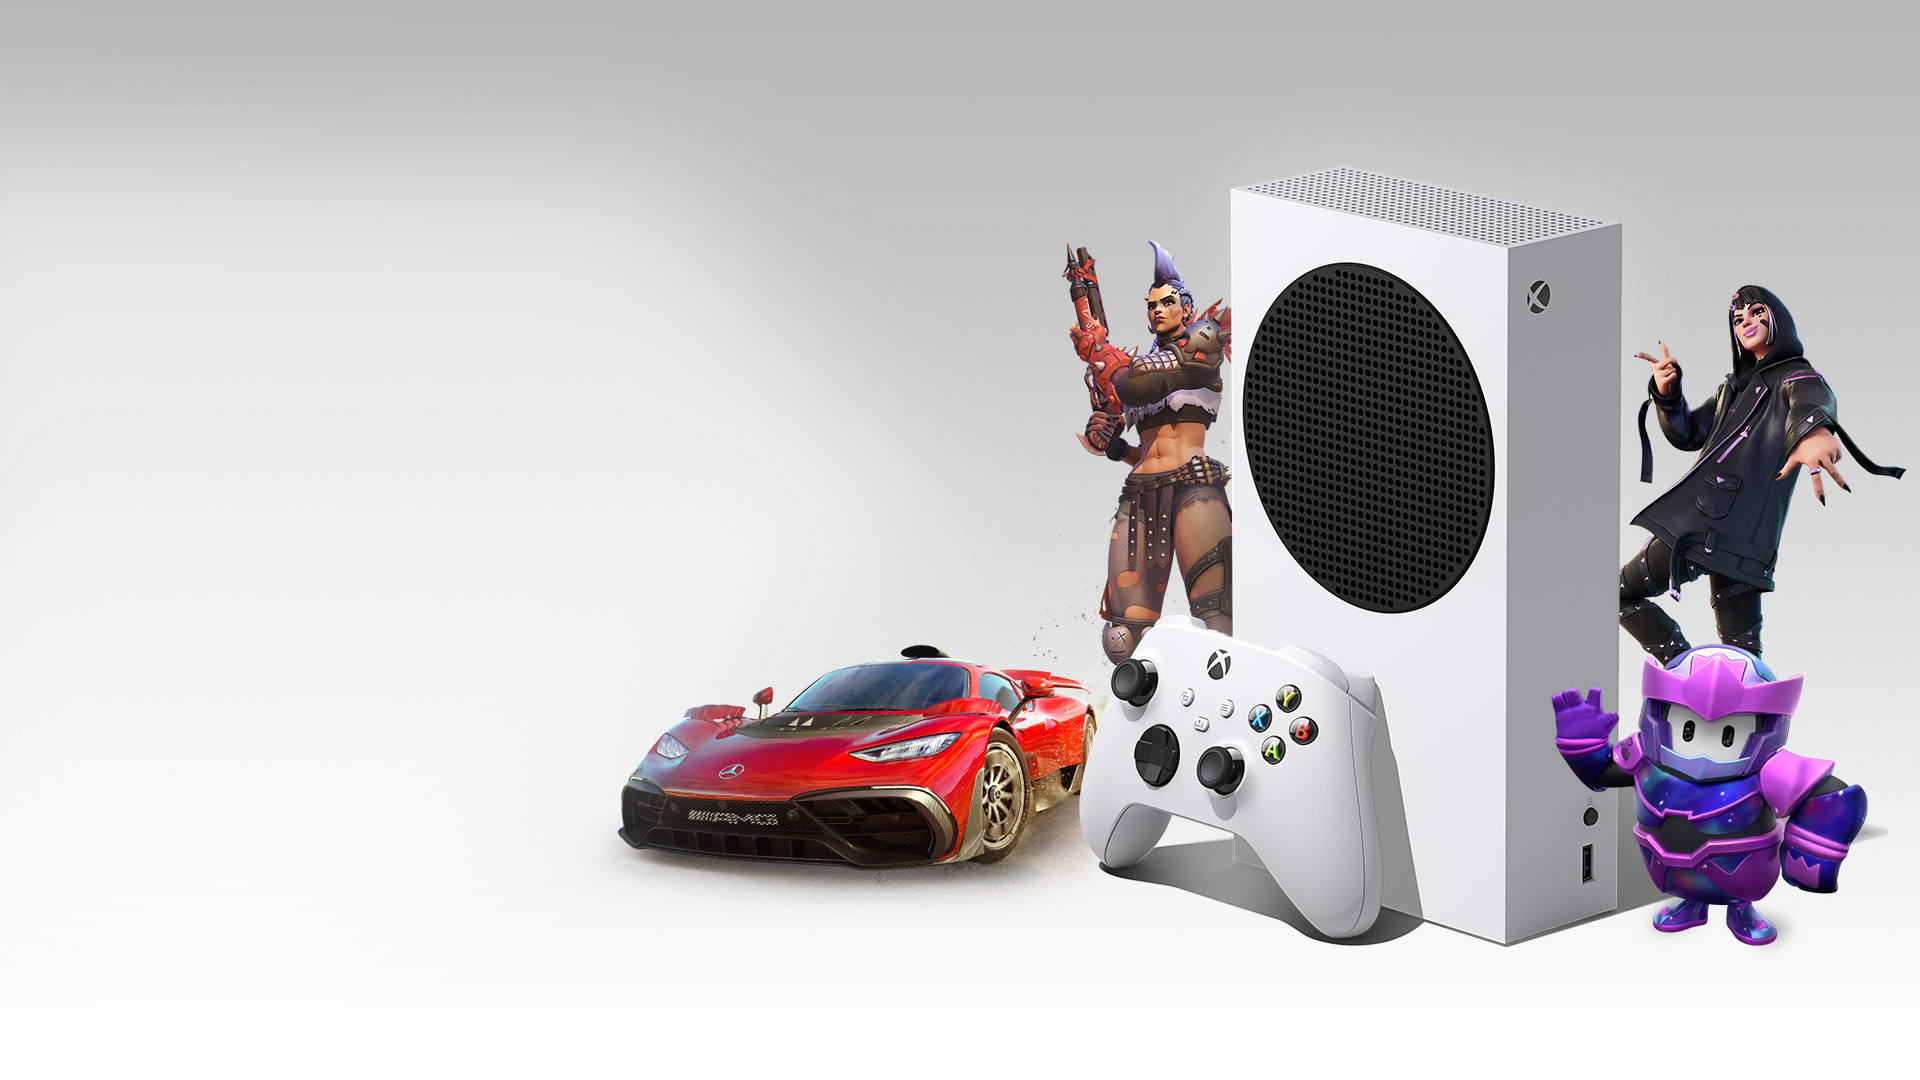 Konzola Xbox Series S obklopená postavami z hier Overwatch 2, Fortnite, Fall Guys a automobilom Mercedes-AMG One z hry Forza Horizon 5.